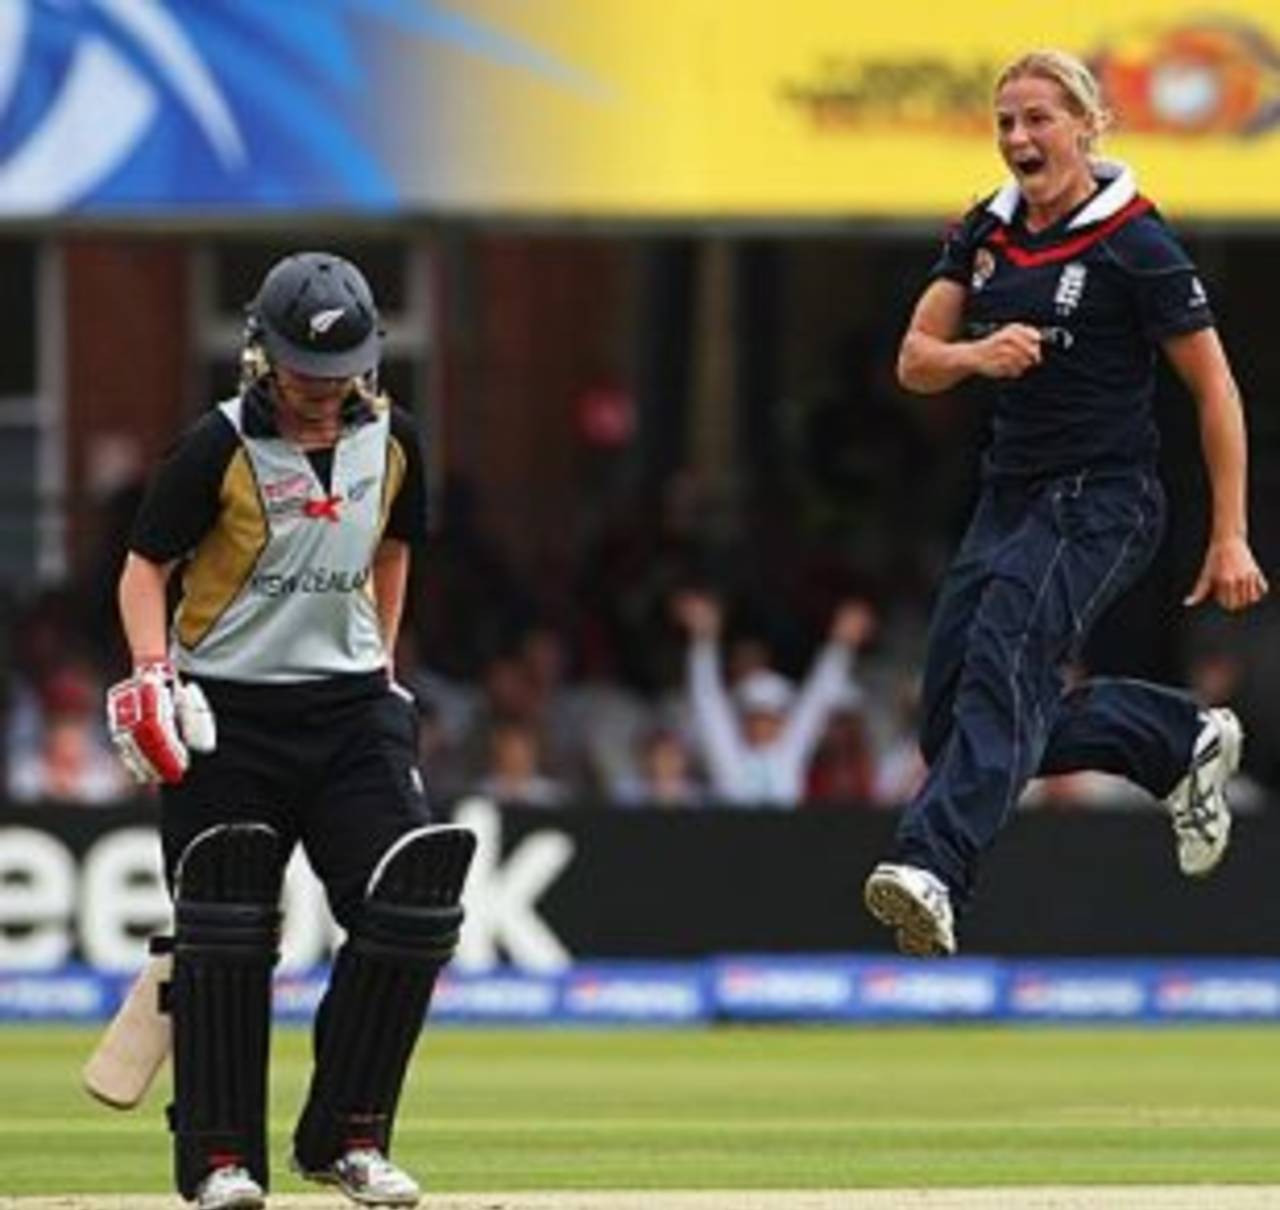 Katherine Brunt exults after dismissing Lucy Doolan, England v New Zealand, ICC Women's World Twenty20 final, Lord's, June 21, 2009